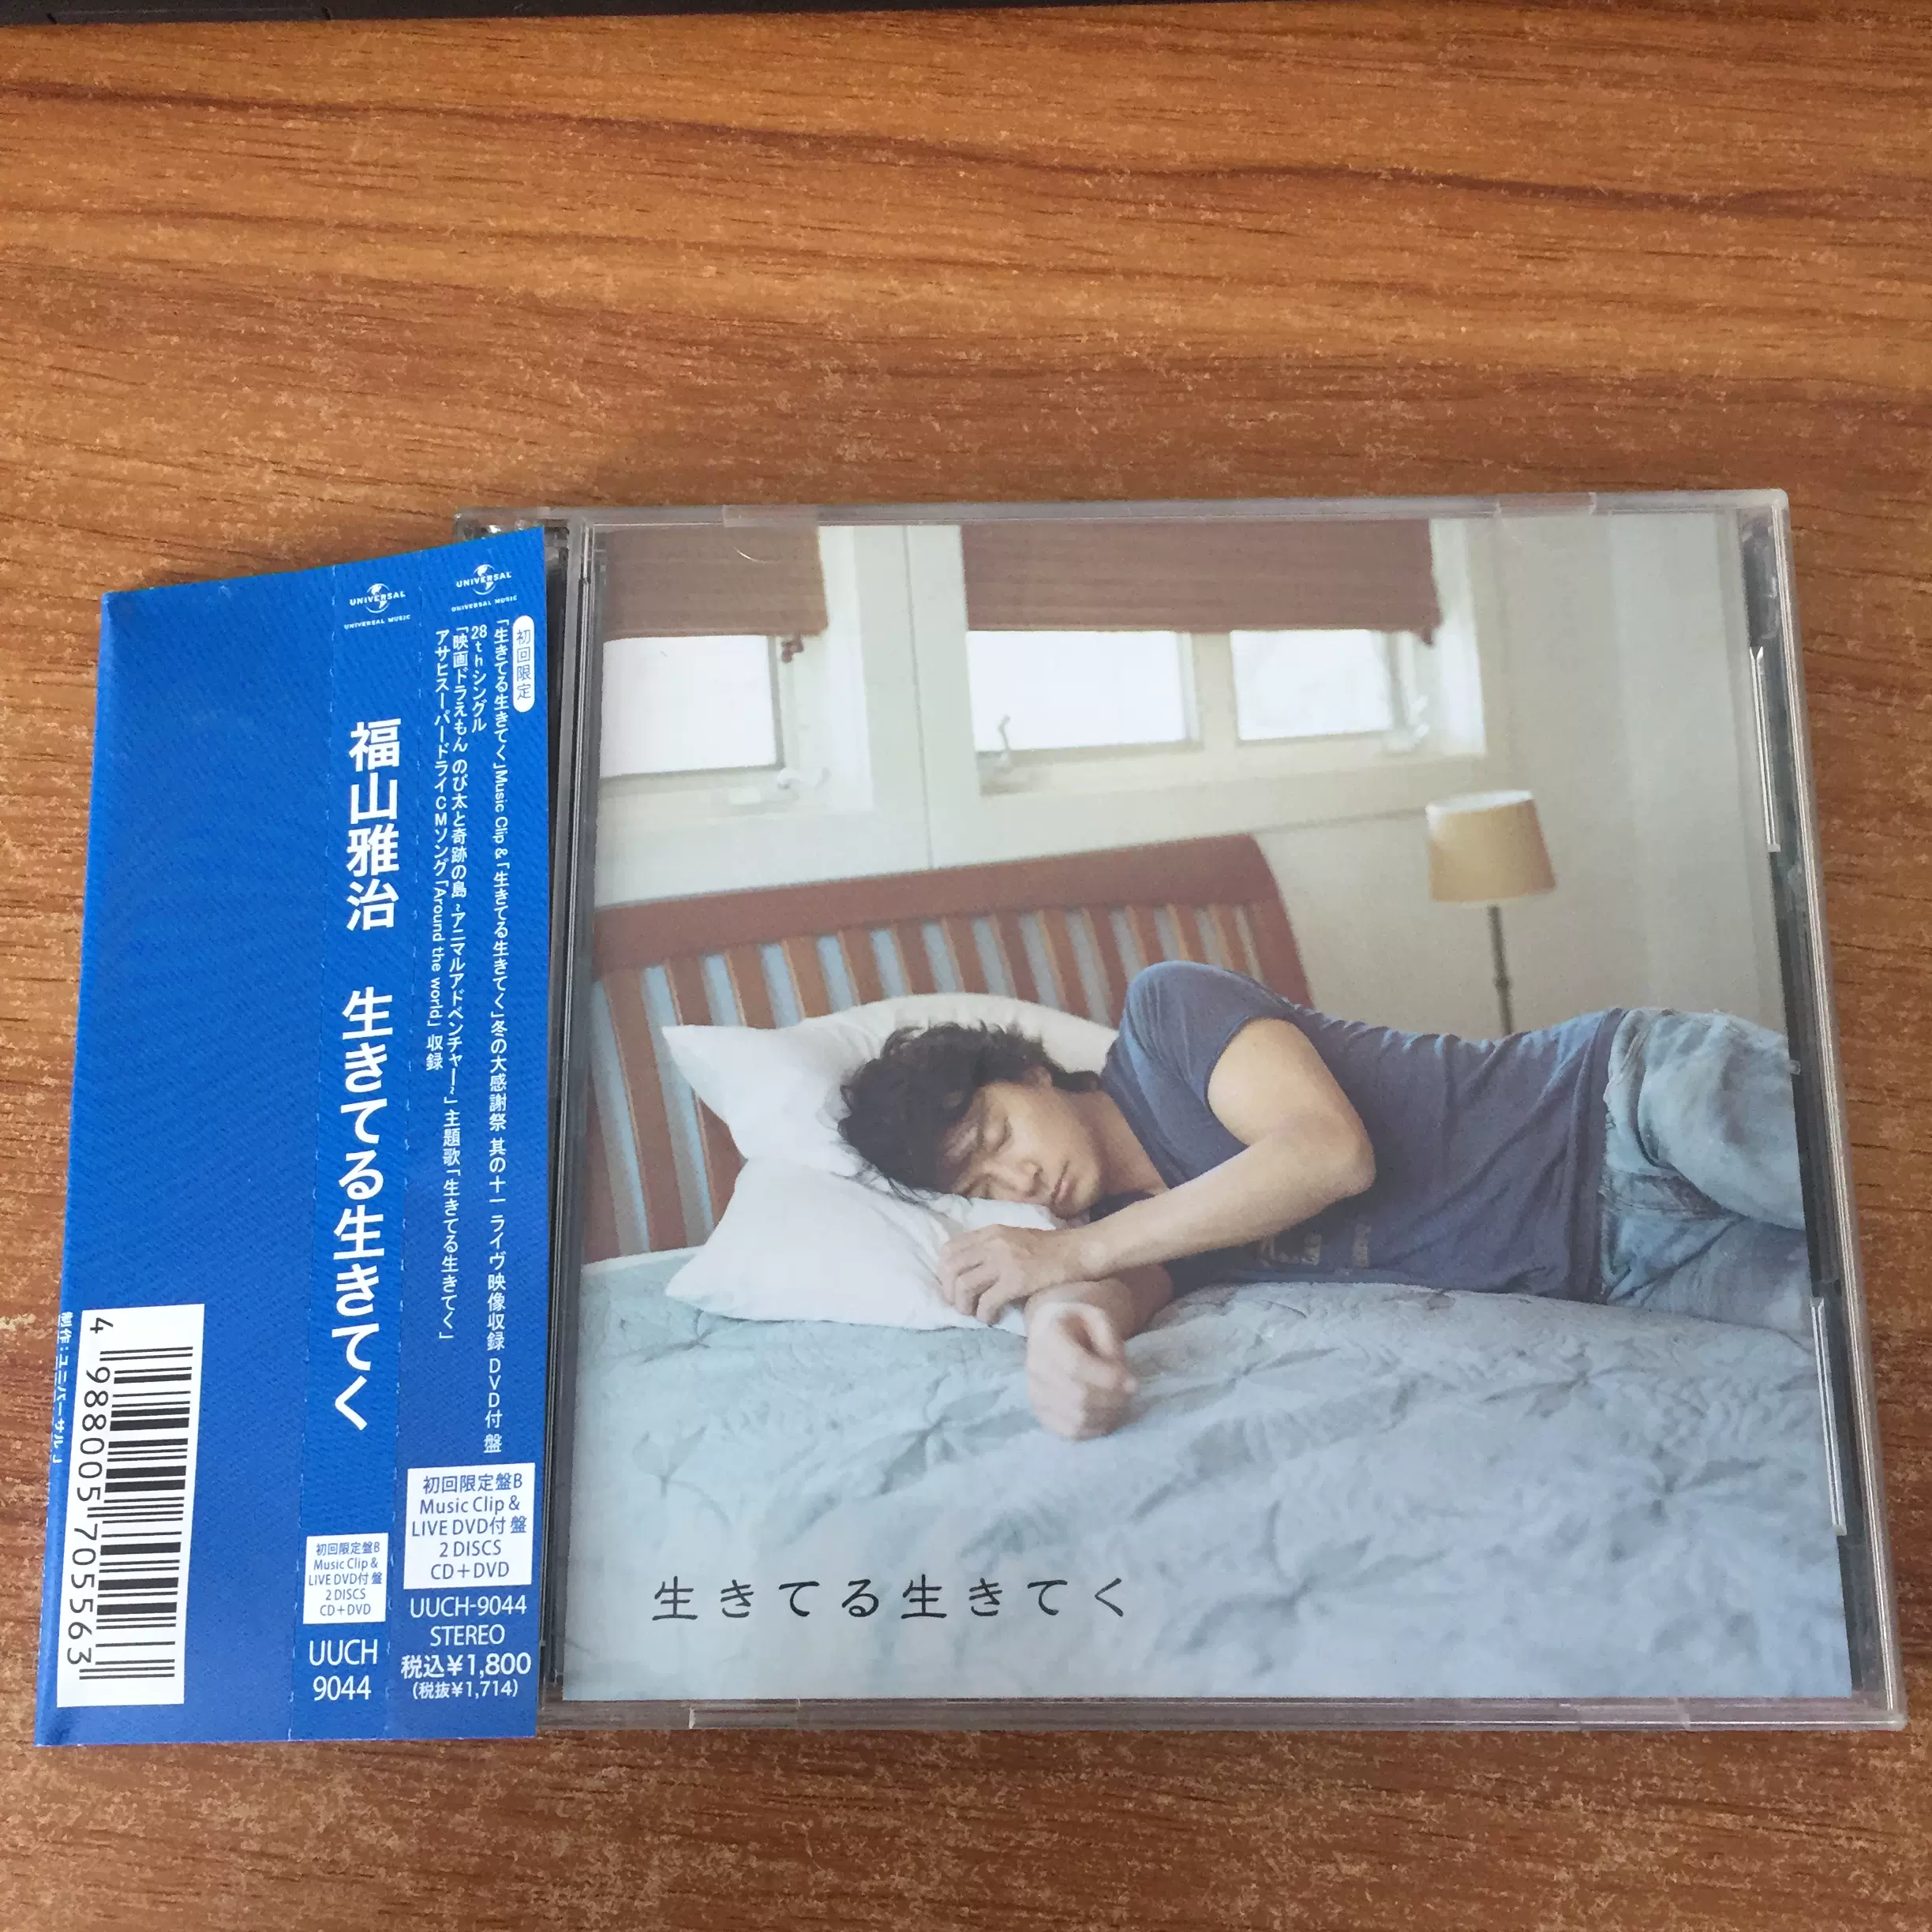 福山雅治Masaharu Fukuyama 生きてる生きてく拆封CD+DVD-Taobao